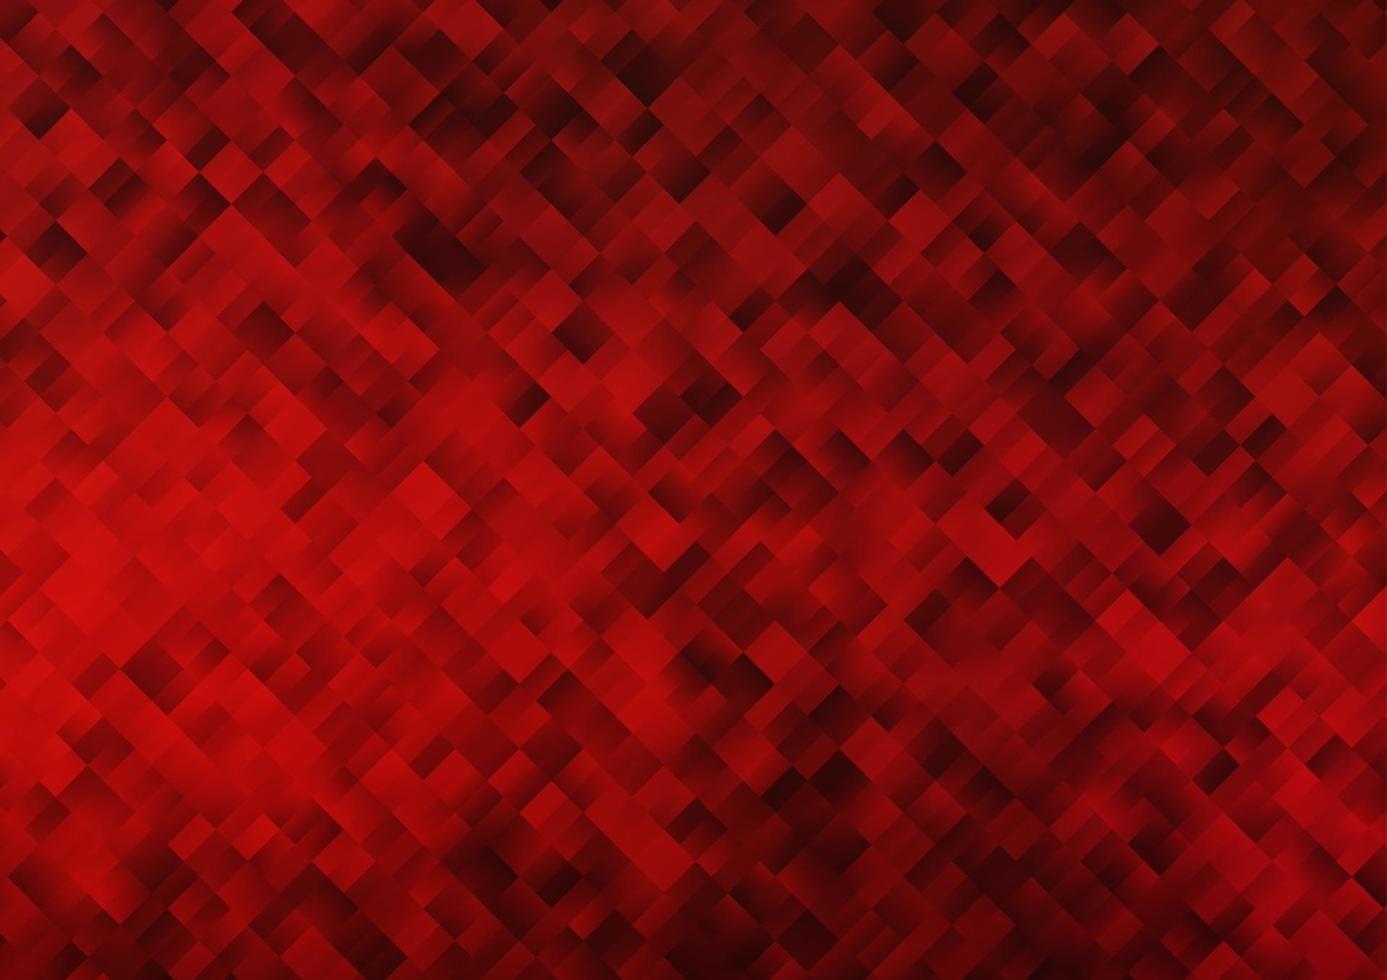 sfondo vettoriale rosso chiaro con rettangoli, quadrati.